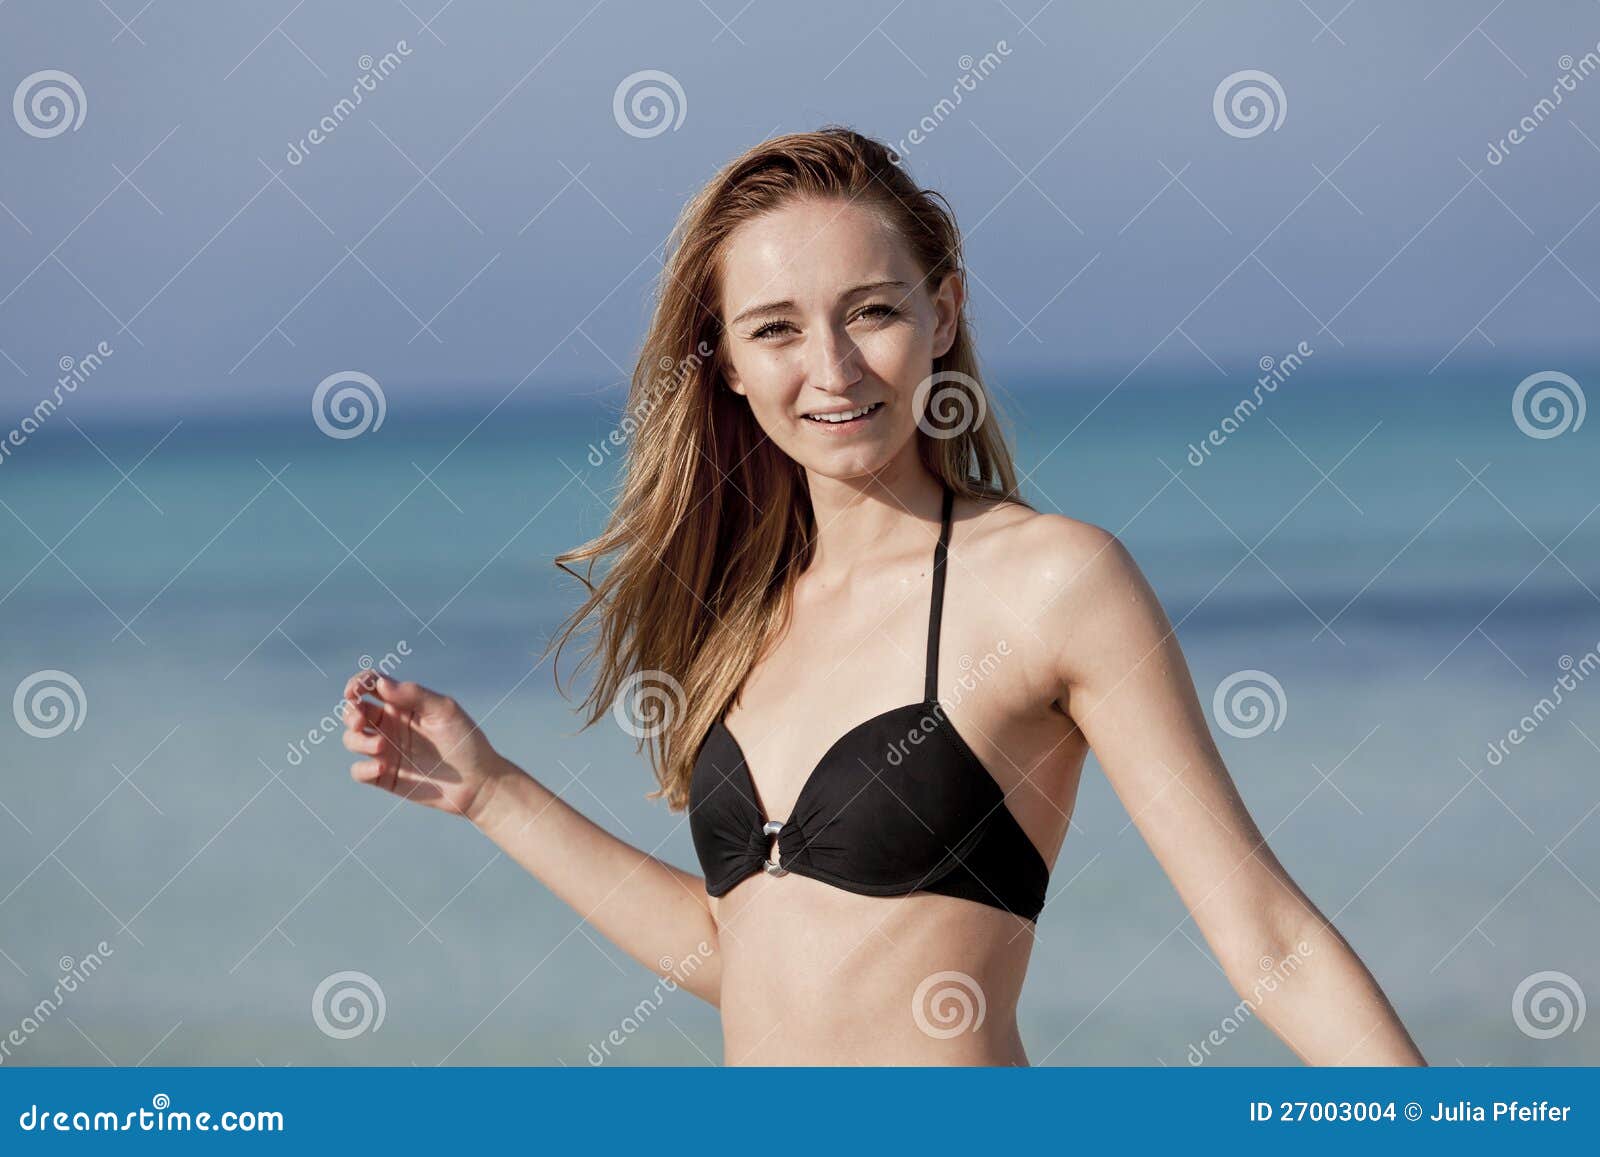 Girls Naked At Beach